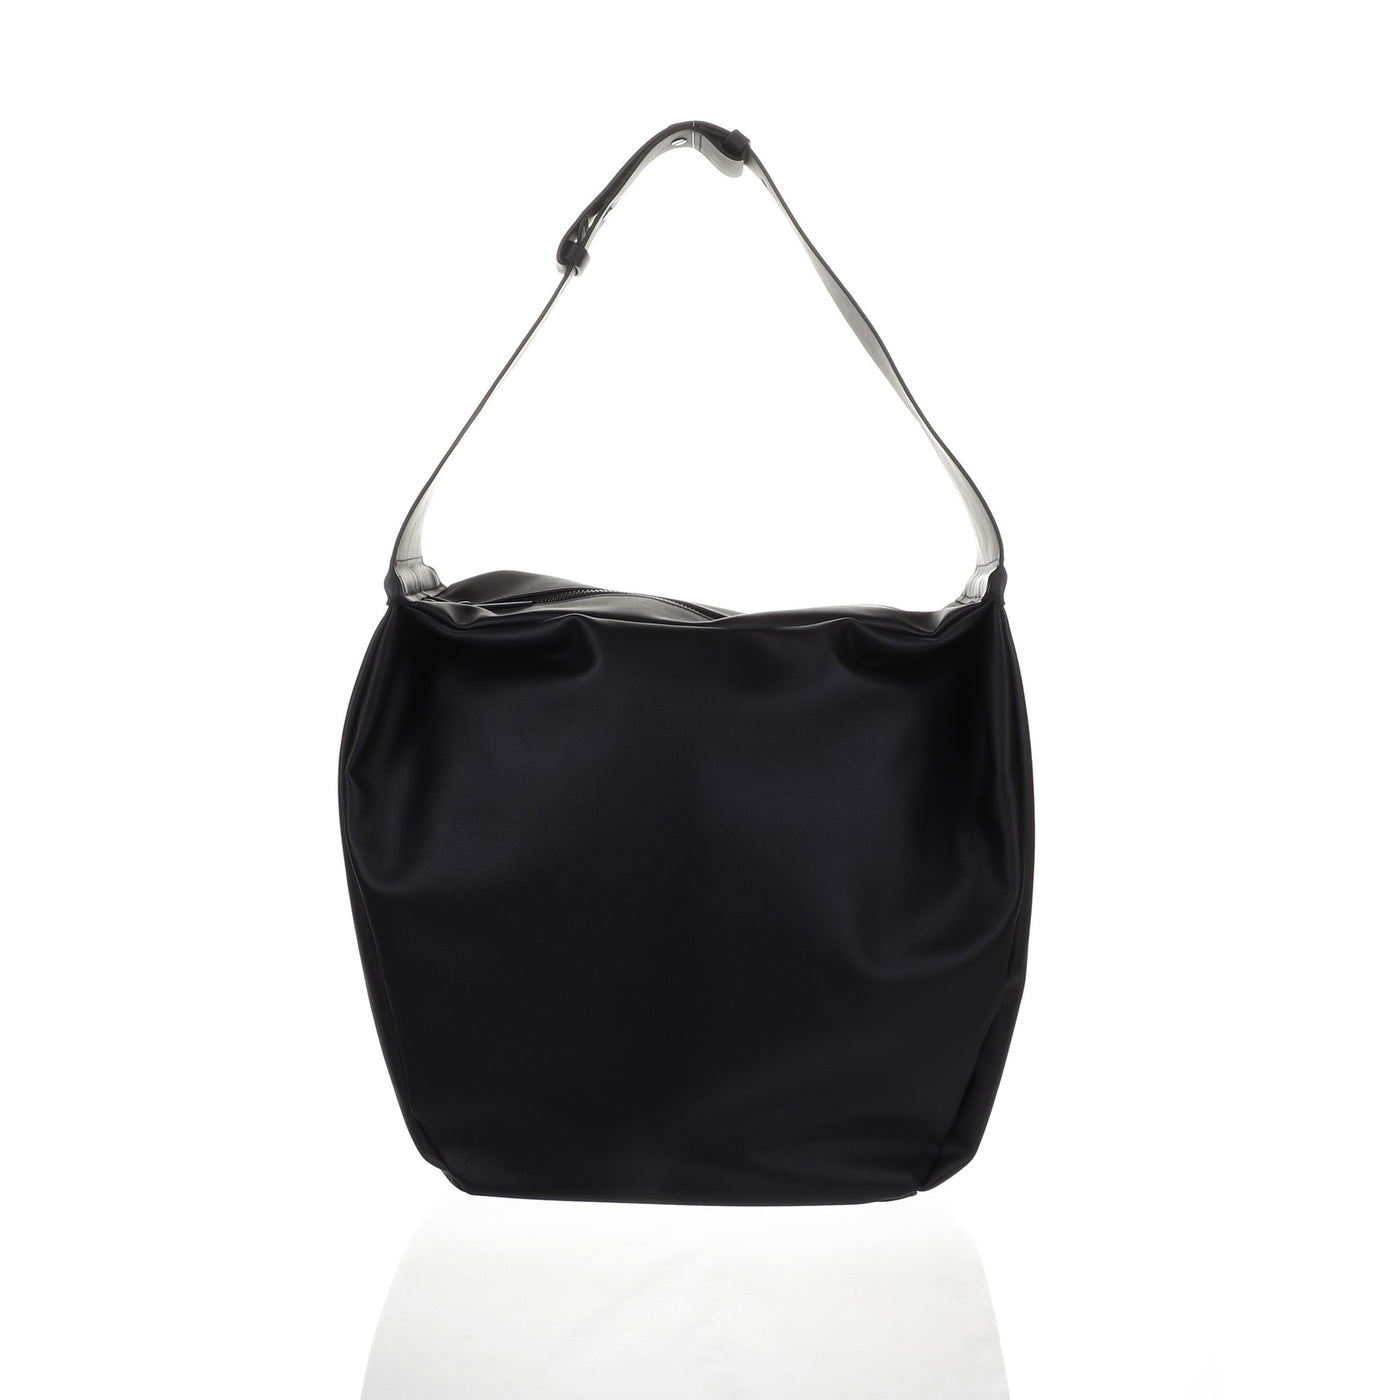 Narumi Hand bag in black